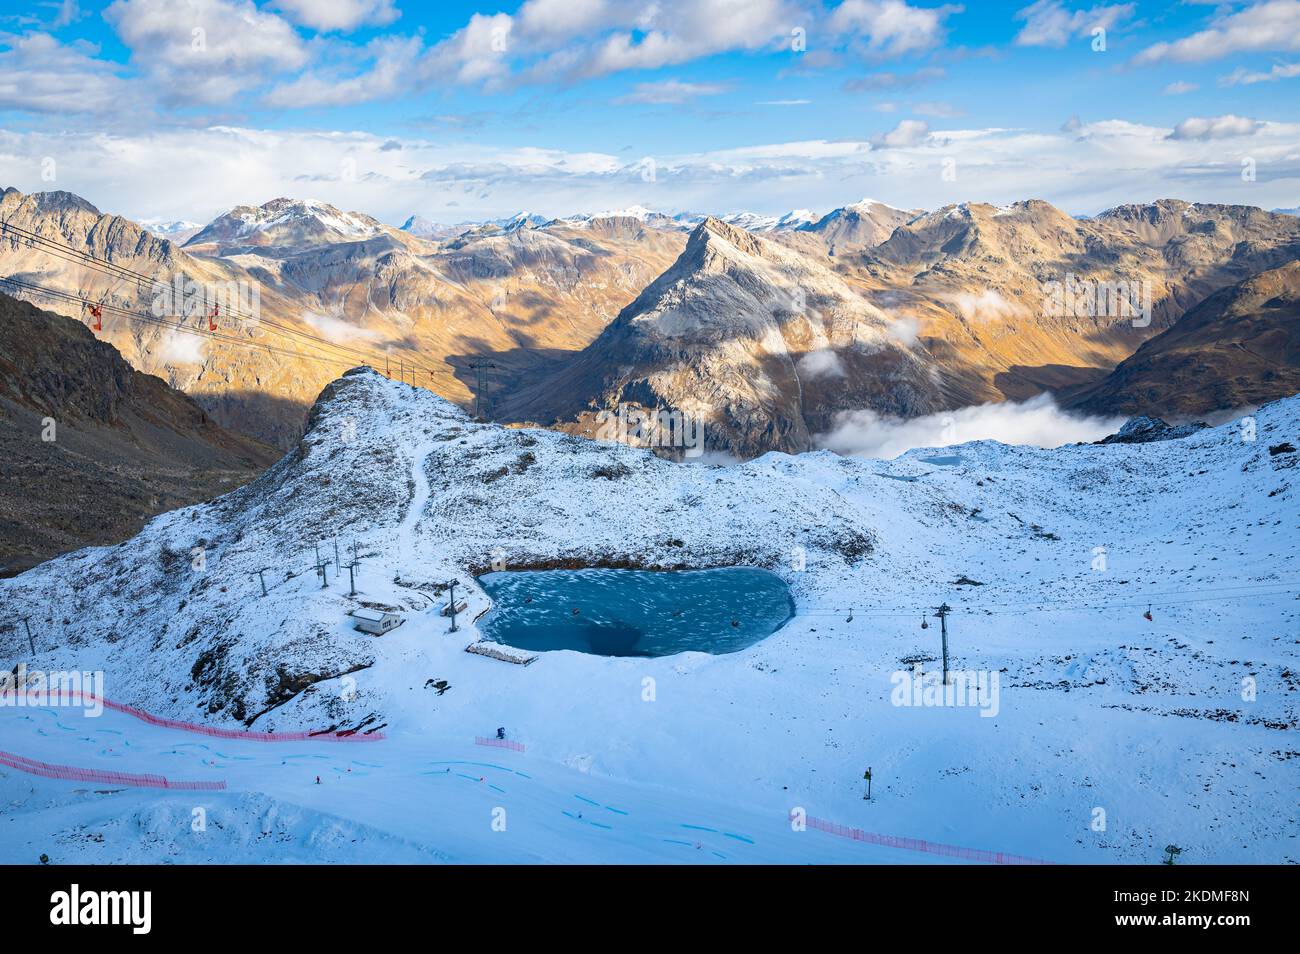 Petit lac turquoise entouré de neige fraîche près du refuge Diavolezza dans la chaîne de montagnes Bernina, Suisse. Banque D'Images